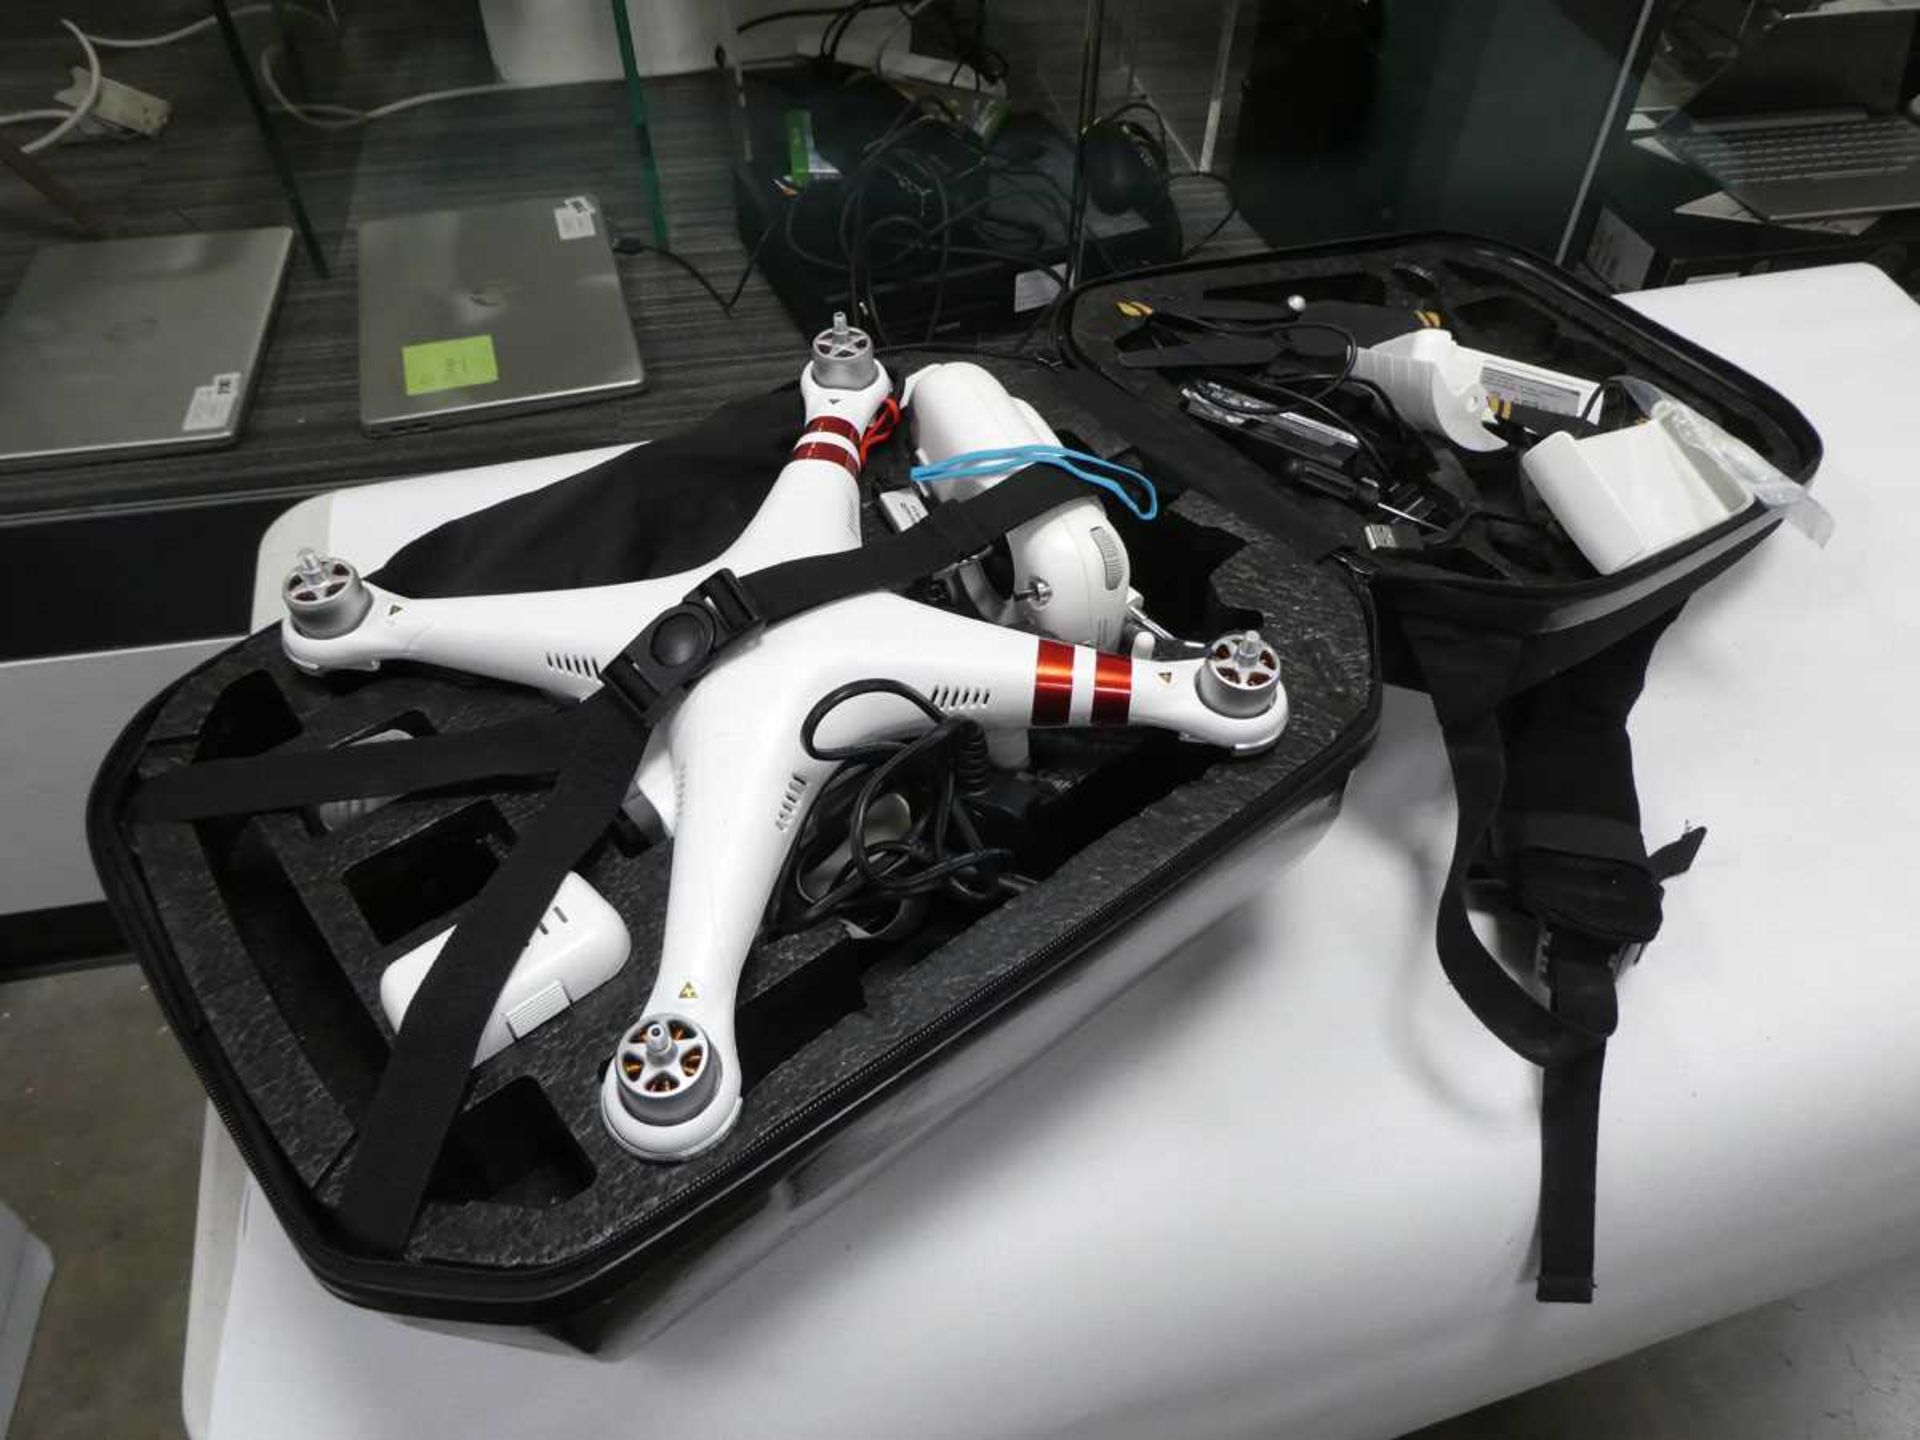 Proflight drone in case